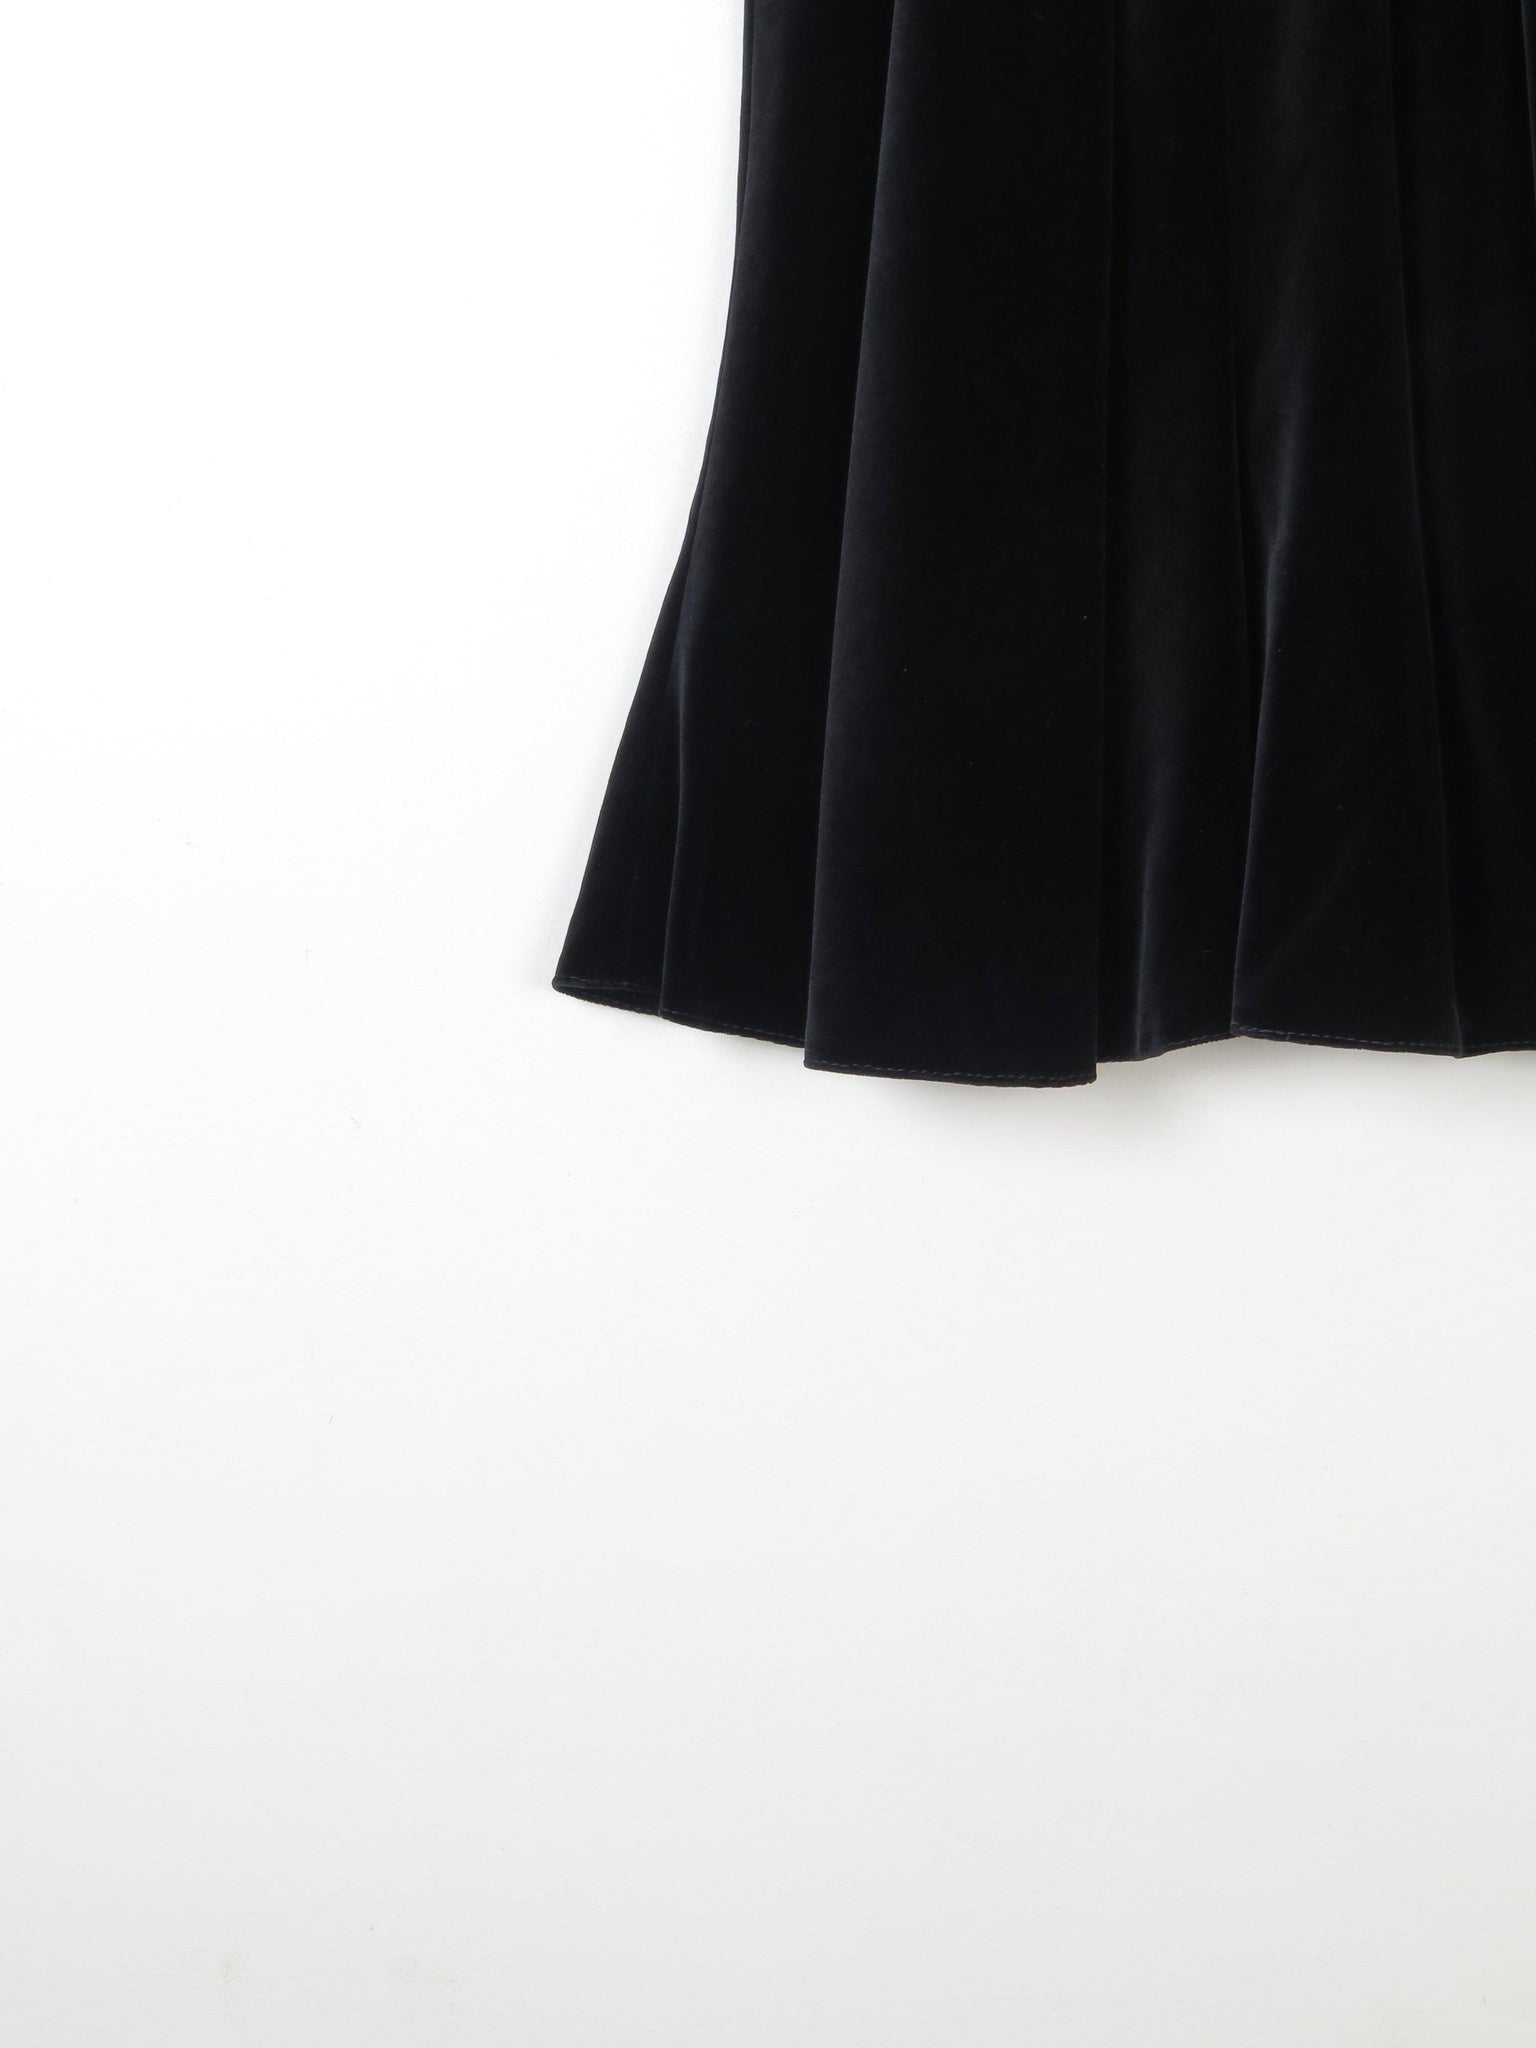 Vintage Black Velvet 1970s Skirt Bias Cut 8/10 Approx - The Harlequin